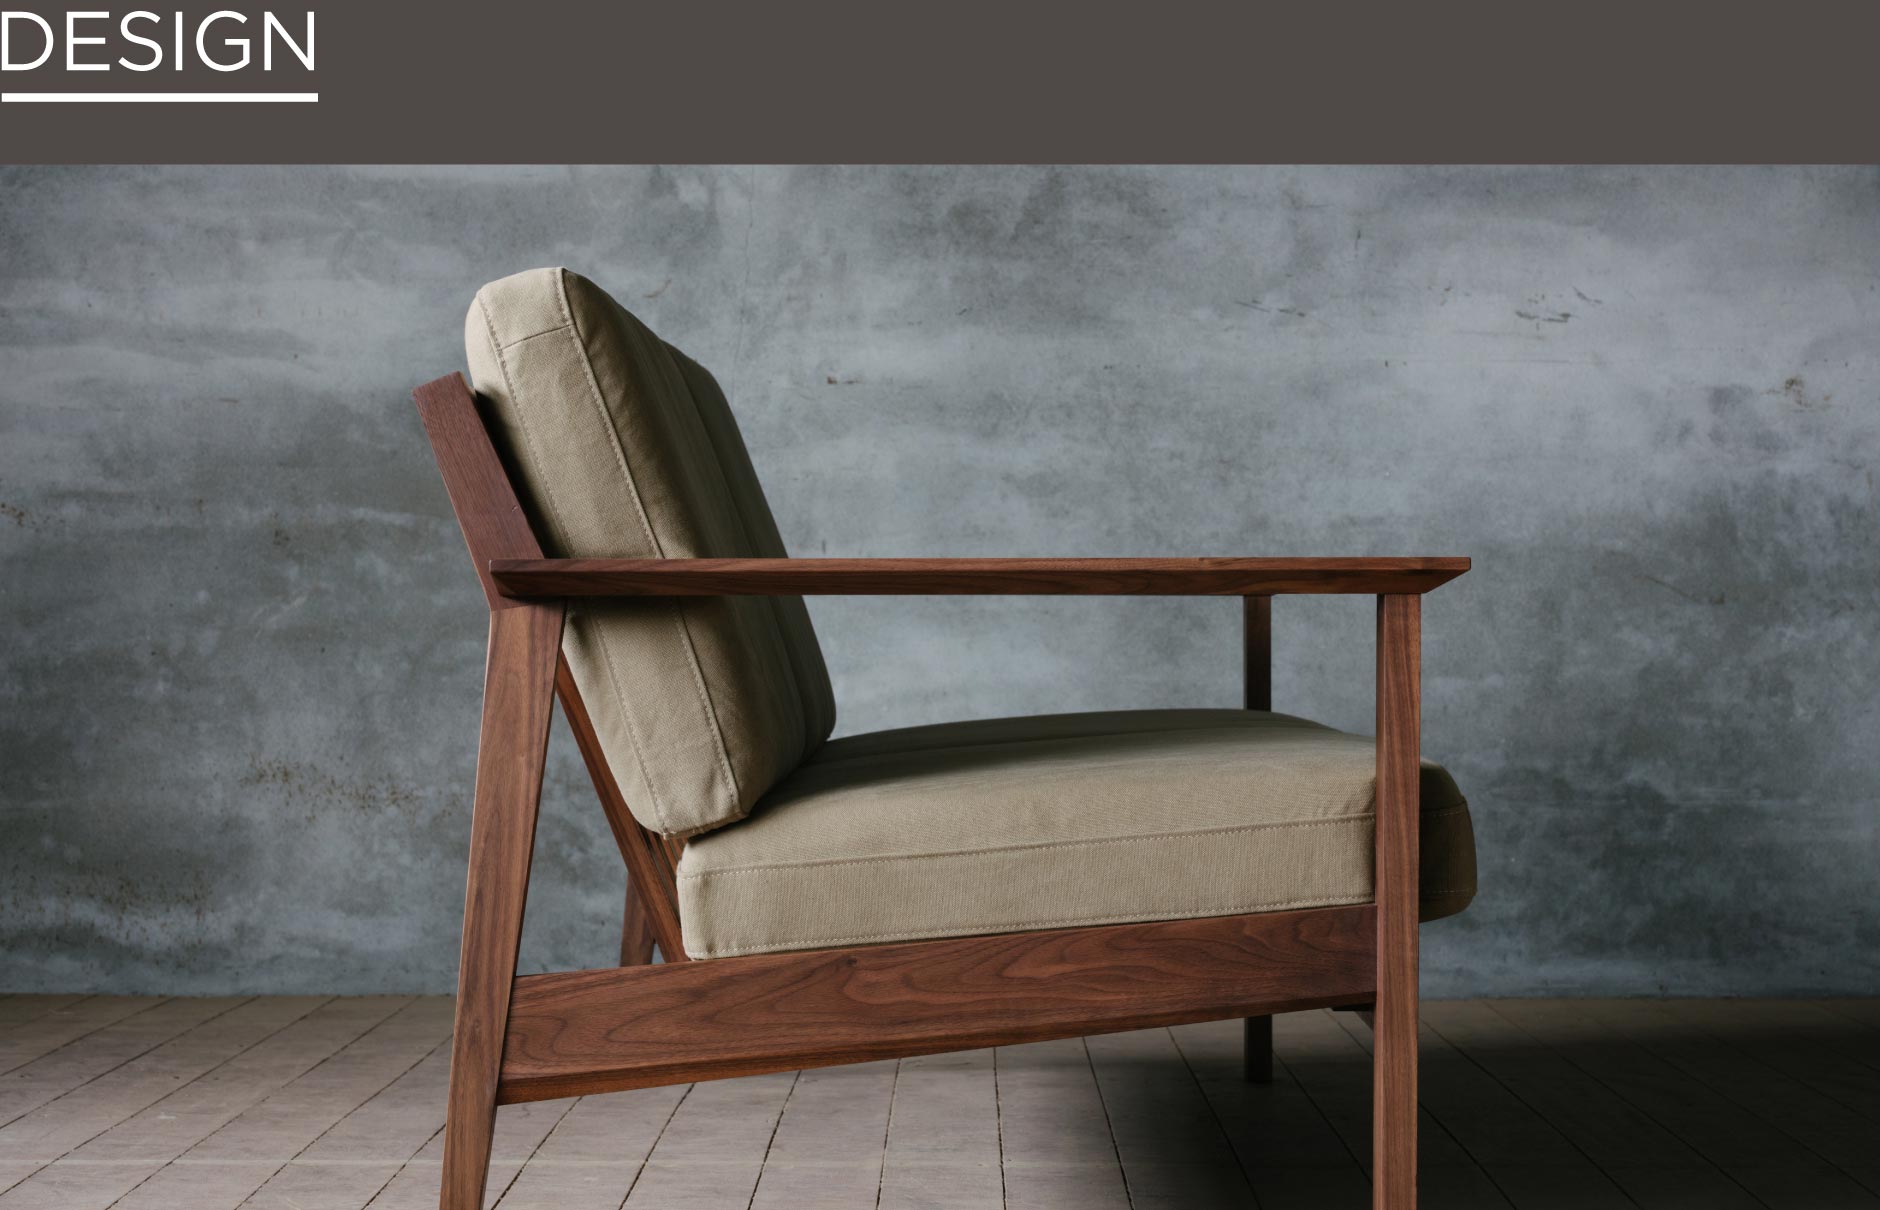 シャープかつ直線の繊細なデザインにこだわったソファ。SOLID大阪の家具の中で人気の、ファーストモデルの無垢ソファ。